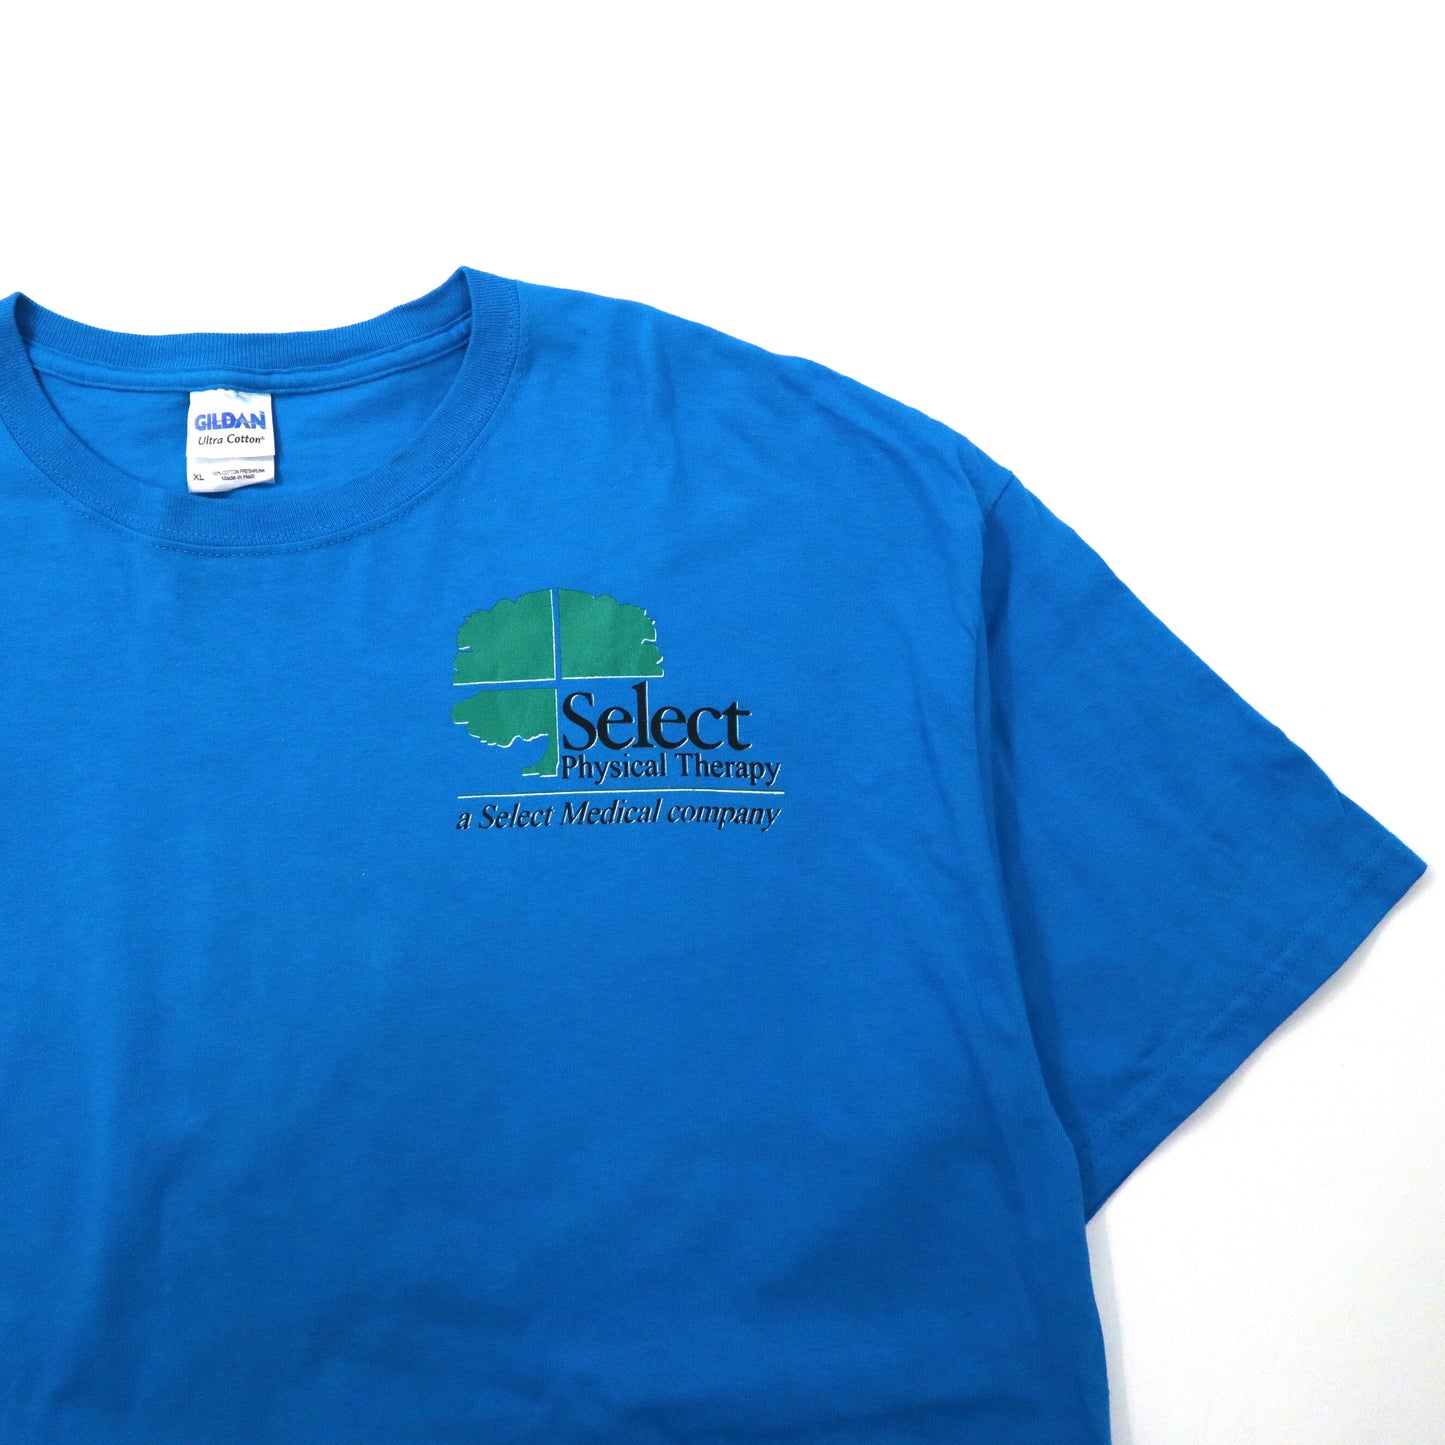 GILDAN ビッグサイズ プリントTシャツ XL ブルー コットン US企業ロゴ Select Physical Therapy